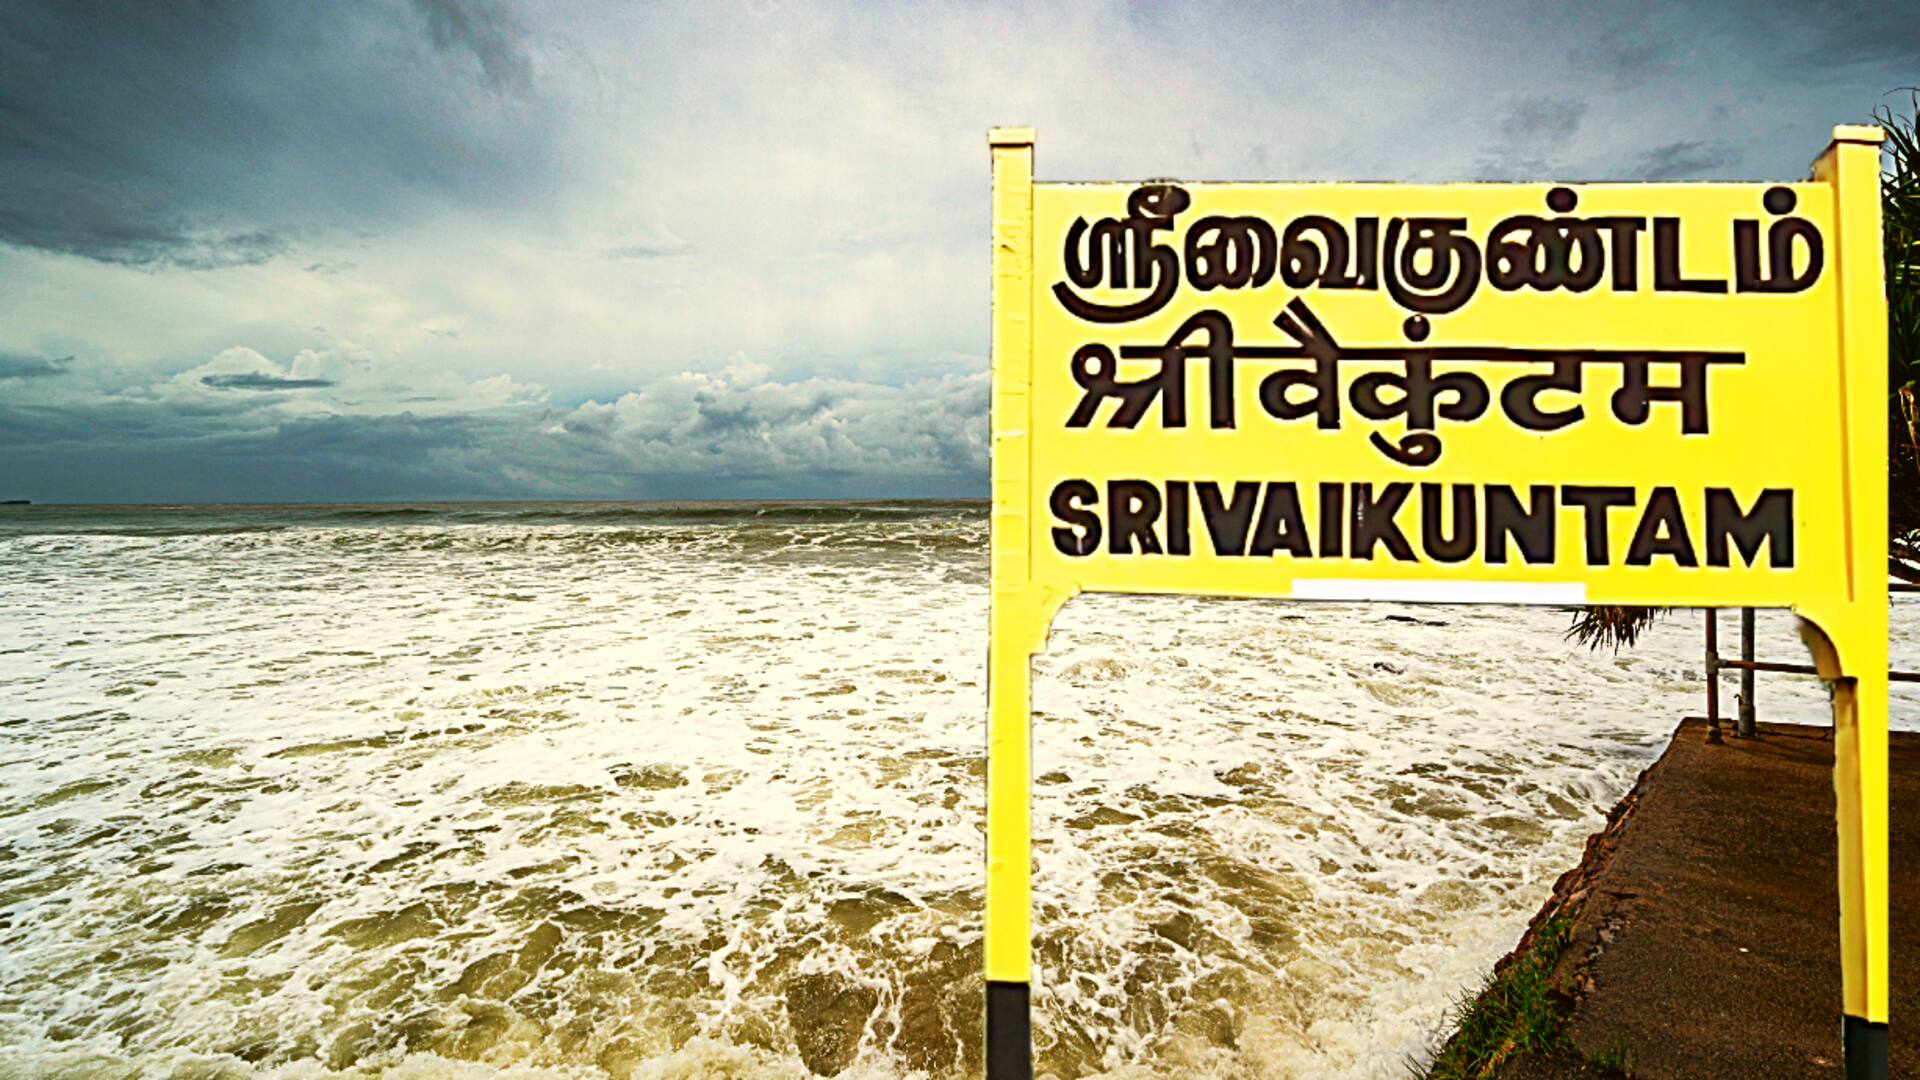 तमिलनाडु: भारी बारिश के कारण श्रीवैकुंटम रेलवे स्टेशन पर फंसे 500 यात्री, रेल पटरी क्षतिग्रस्त